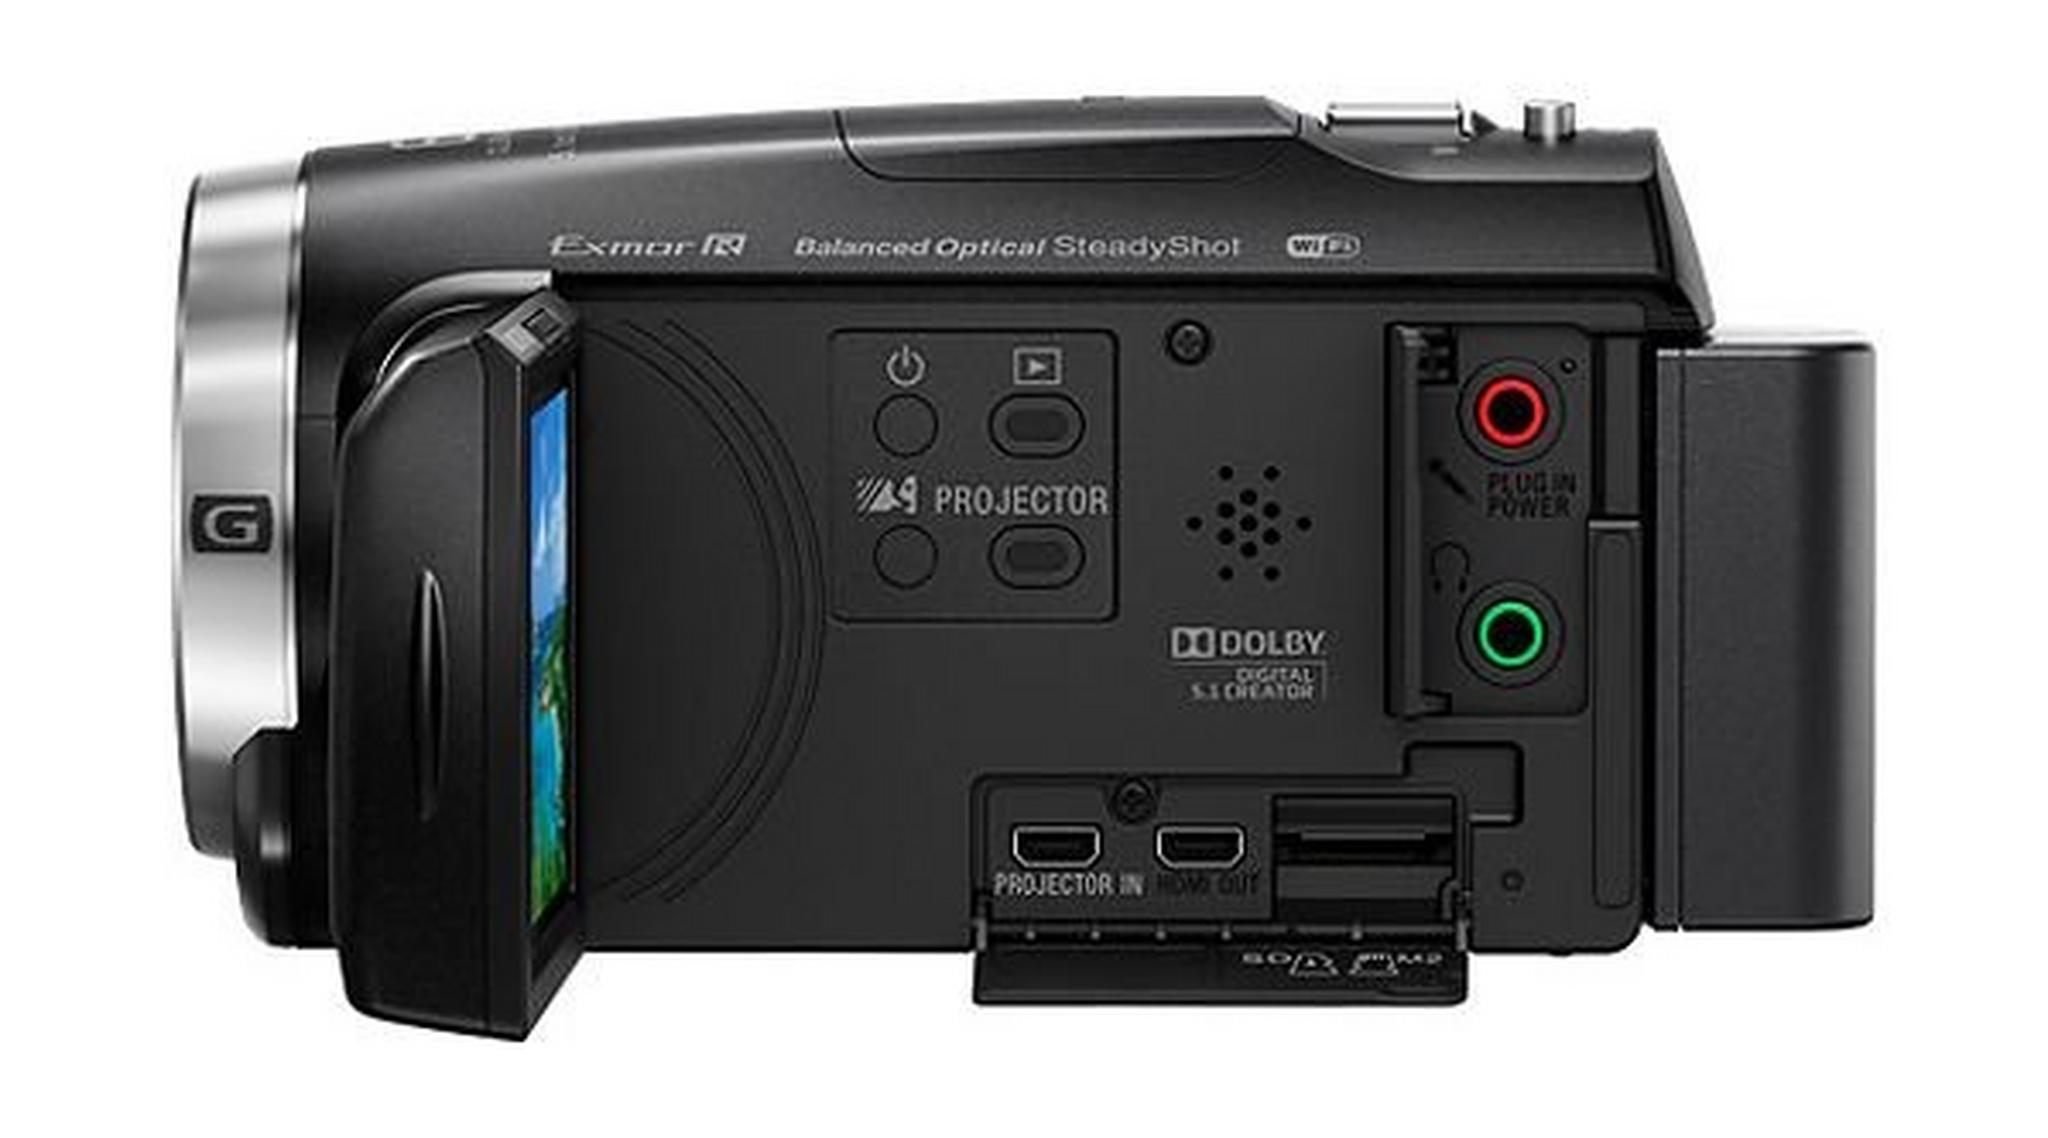 كاميرا الفيديو المحمولة كاملة الوضوح من سوني - سعة تخزين ٣٢ جيجابايت وبروجيكتور مدمج (HDR-PJ675)